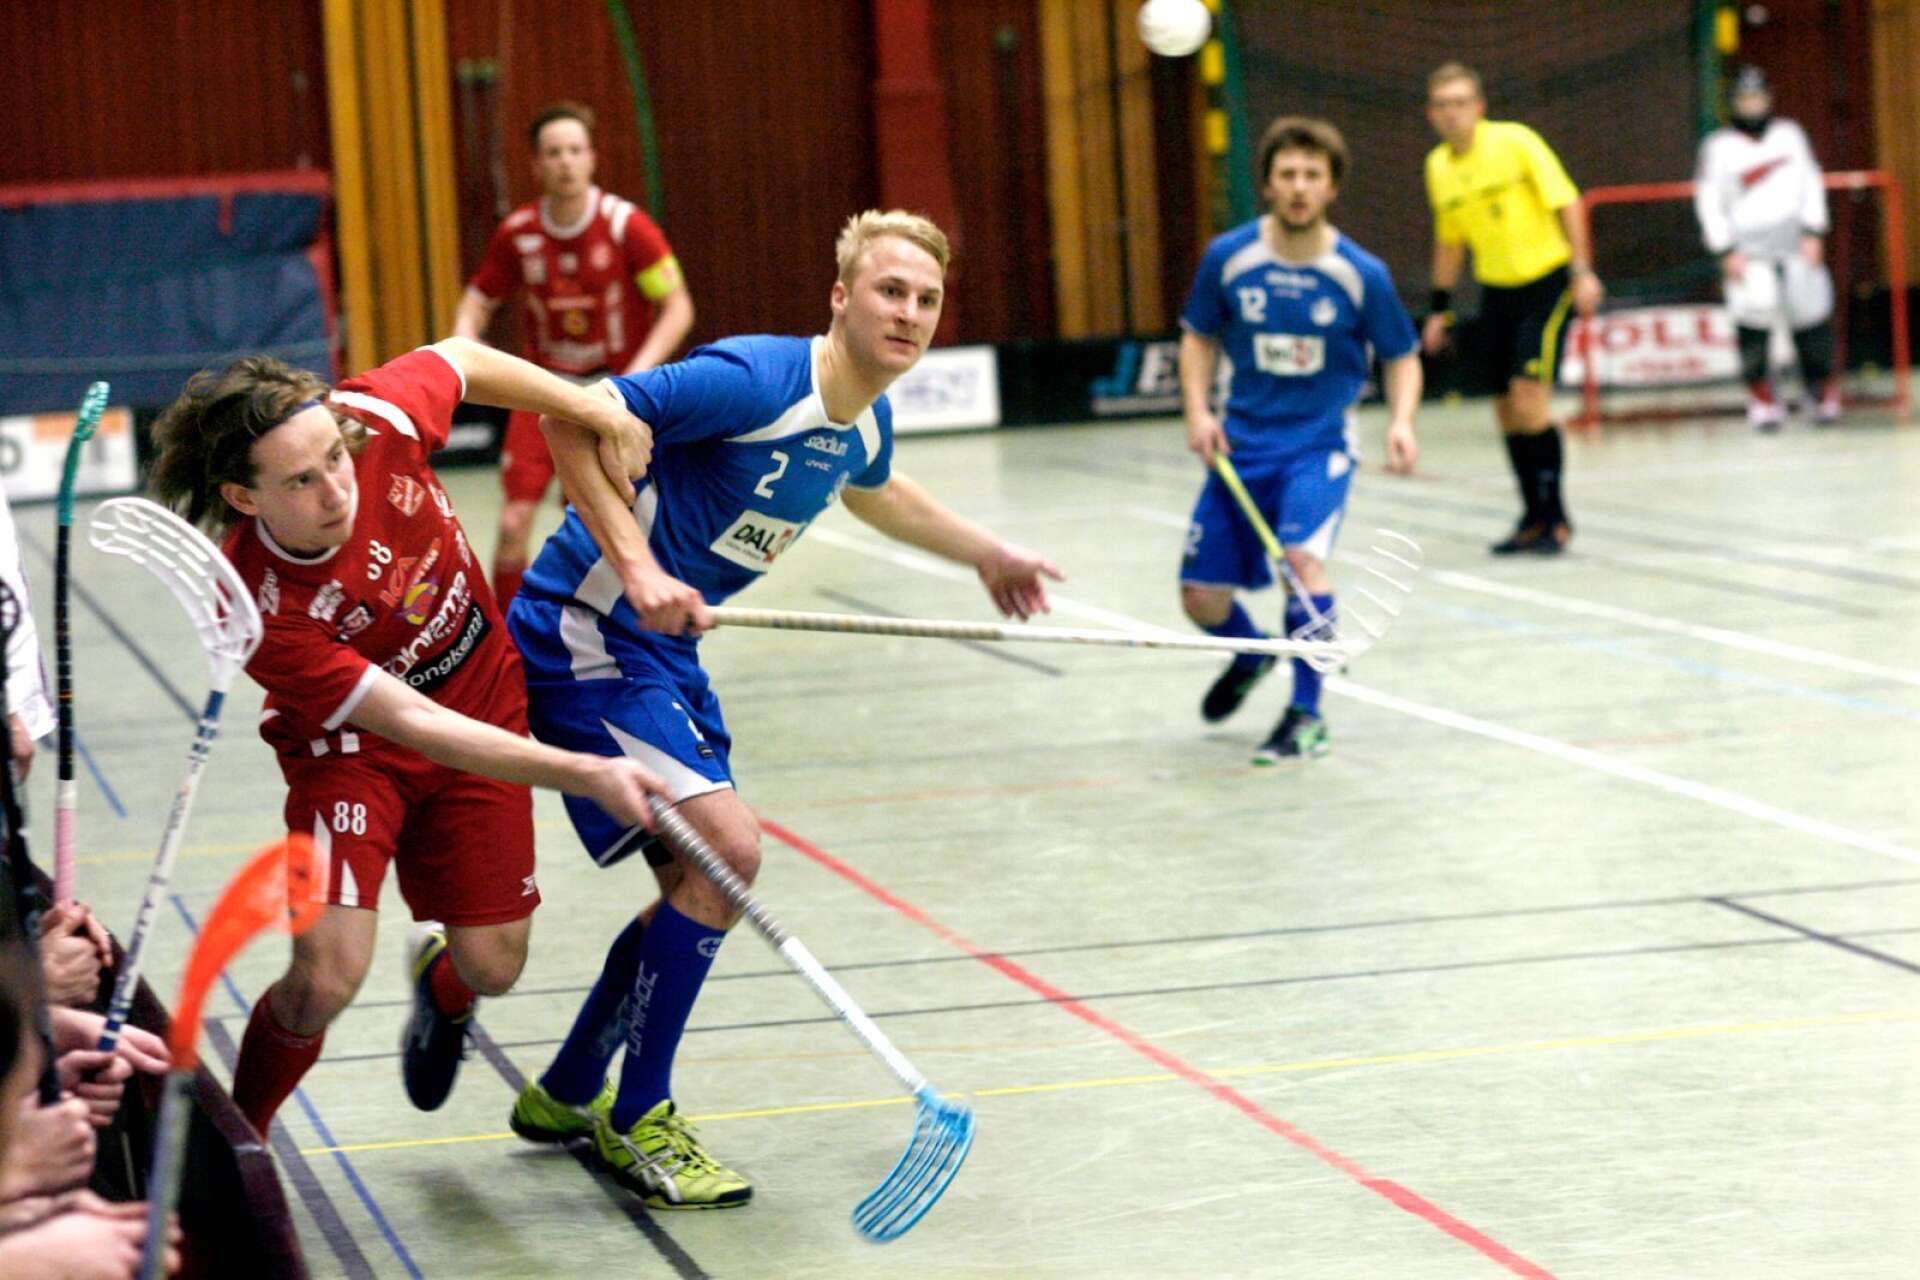 Precis som Fredrik Hermansson har Dan Karlsson (i blått) numera bytt Halna mot Lockerud. Här i kamp med Fritz Svensson i derbyt 2013. (ARKIVBILD)